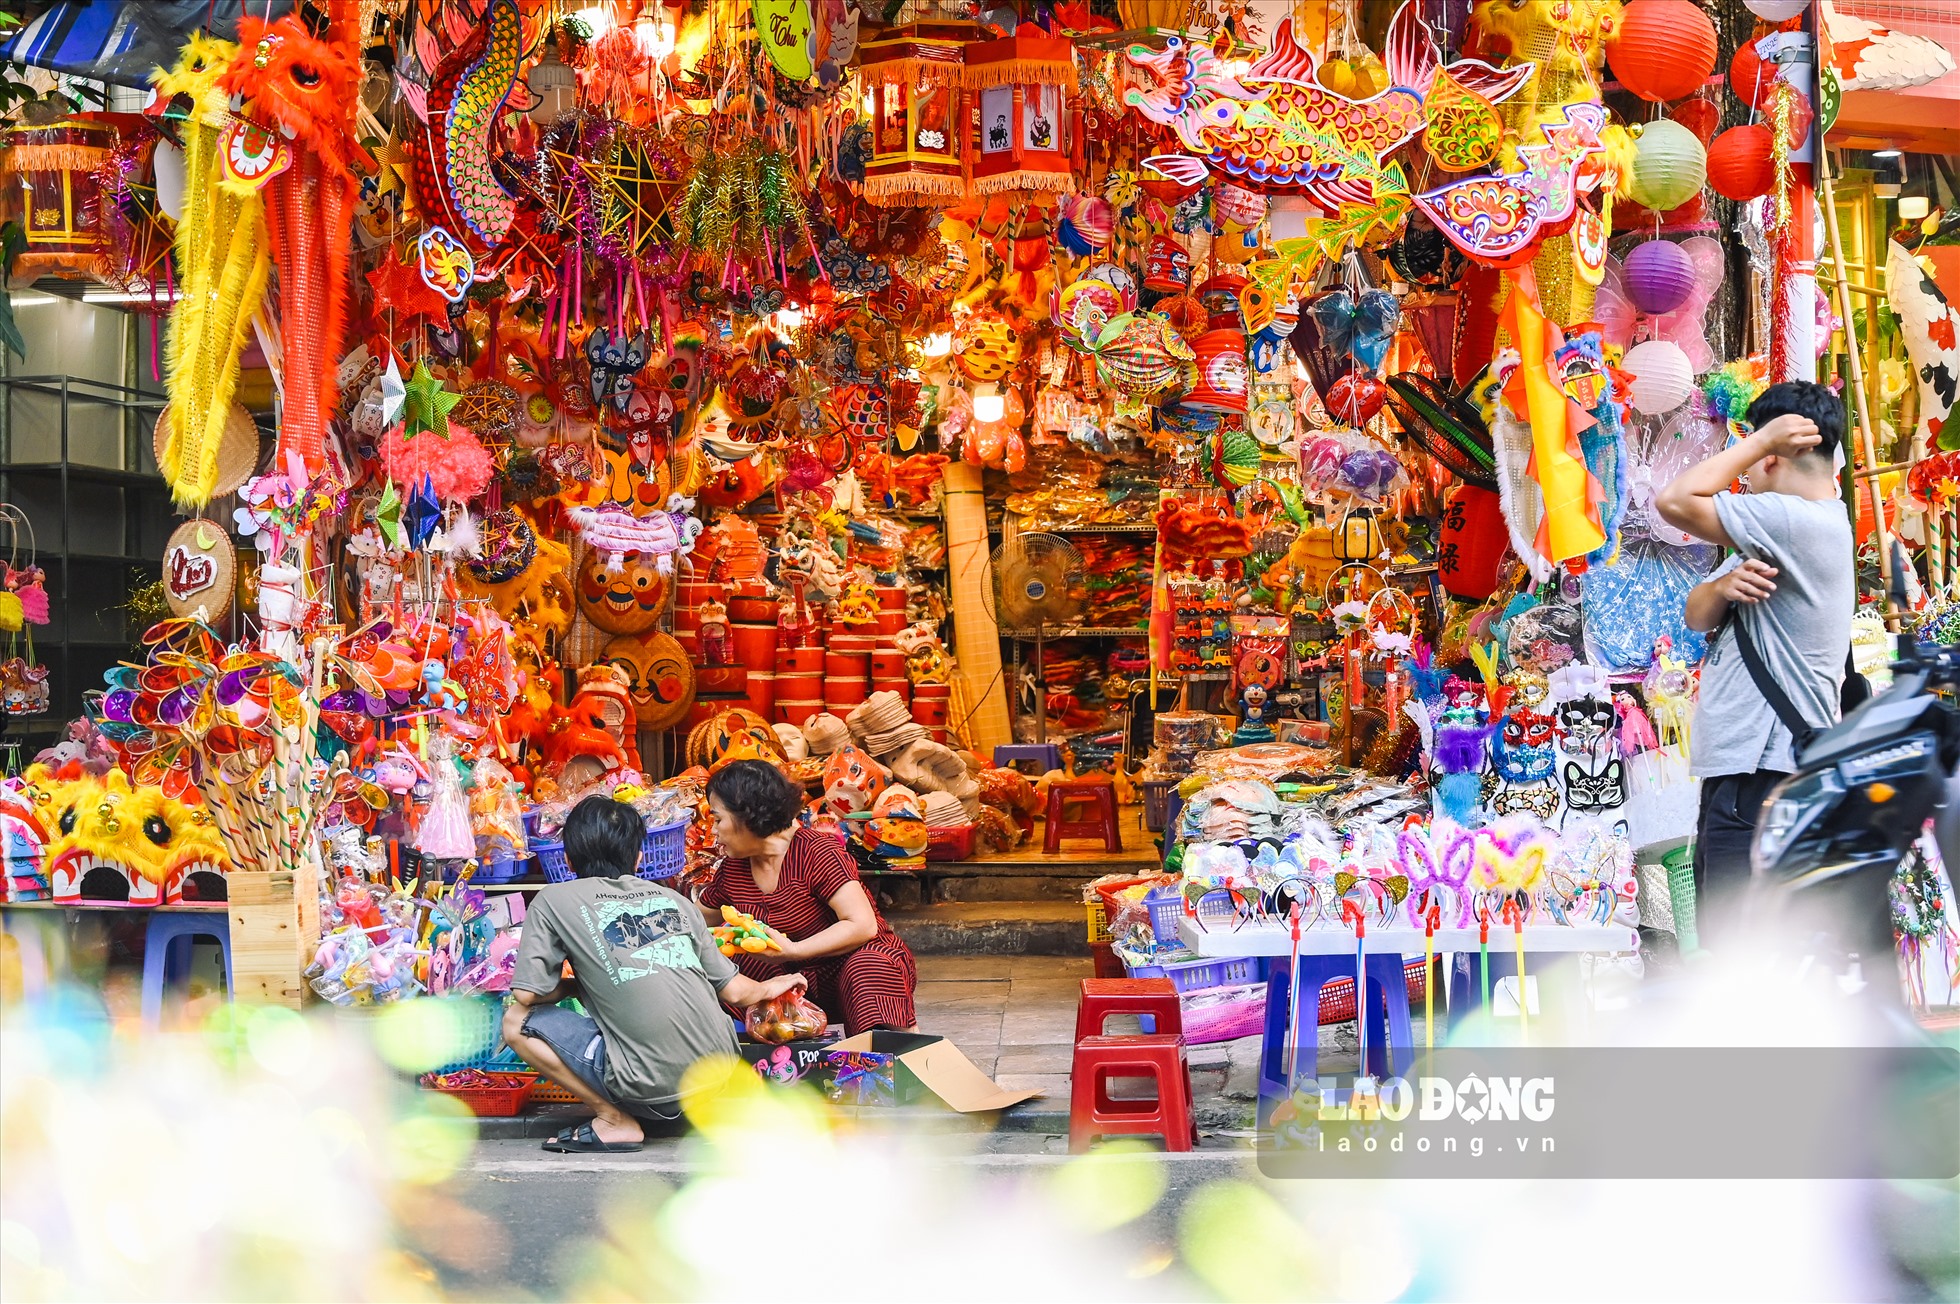 Đồ chơi Trung thu được bày bán ở đây phong phú, đa dạng với nhiều mặt hàng như: Đèn ông sao, trống, đèn lồng, mặt nạ, đầu lân,… Đây đều là sản phẩm được sản xuất bởi các làng nghề Việt Nam.